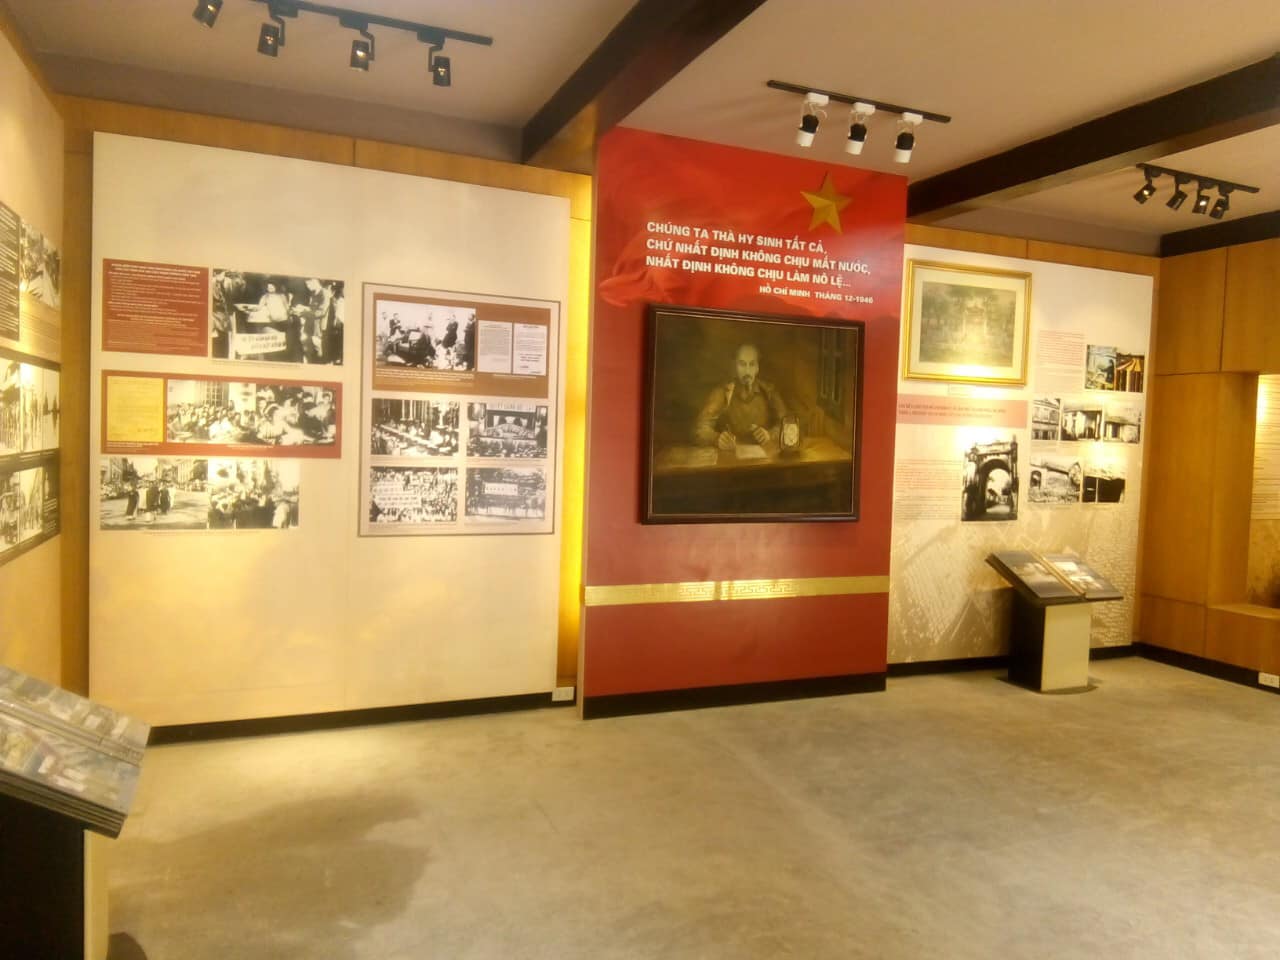 Bảo tàng Hà Nội - Hơi thở của thời lịch sử xa xưa, hào hùng 5